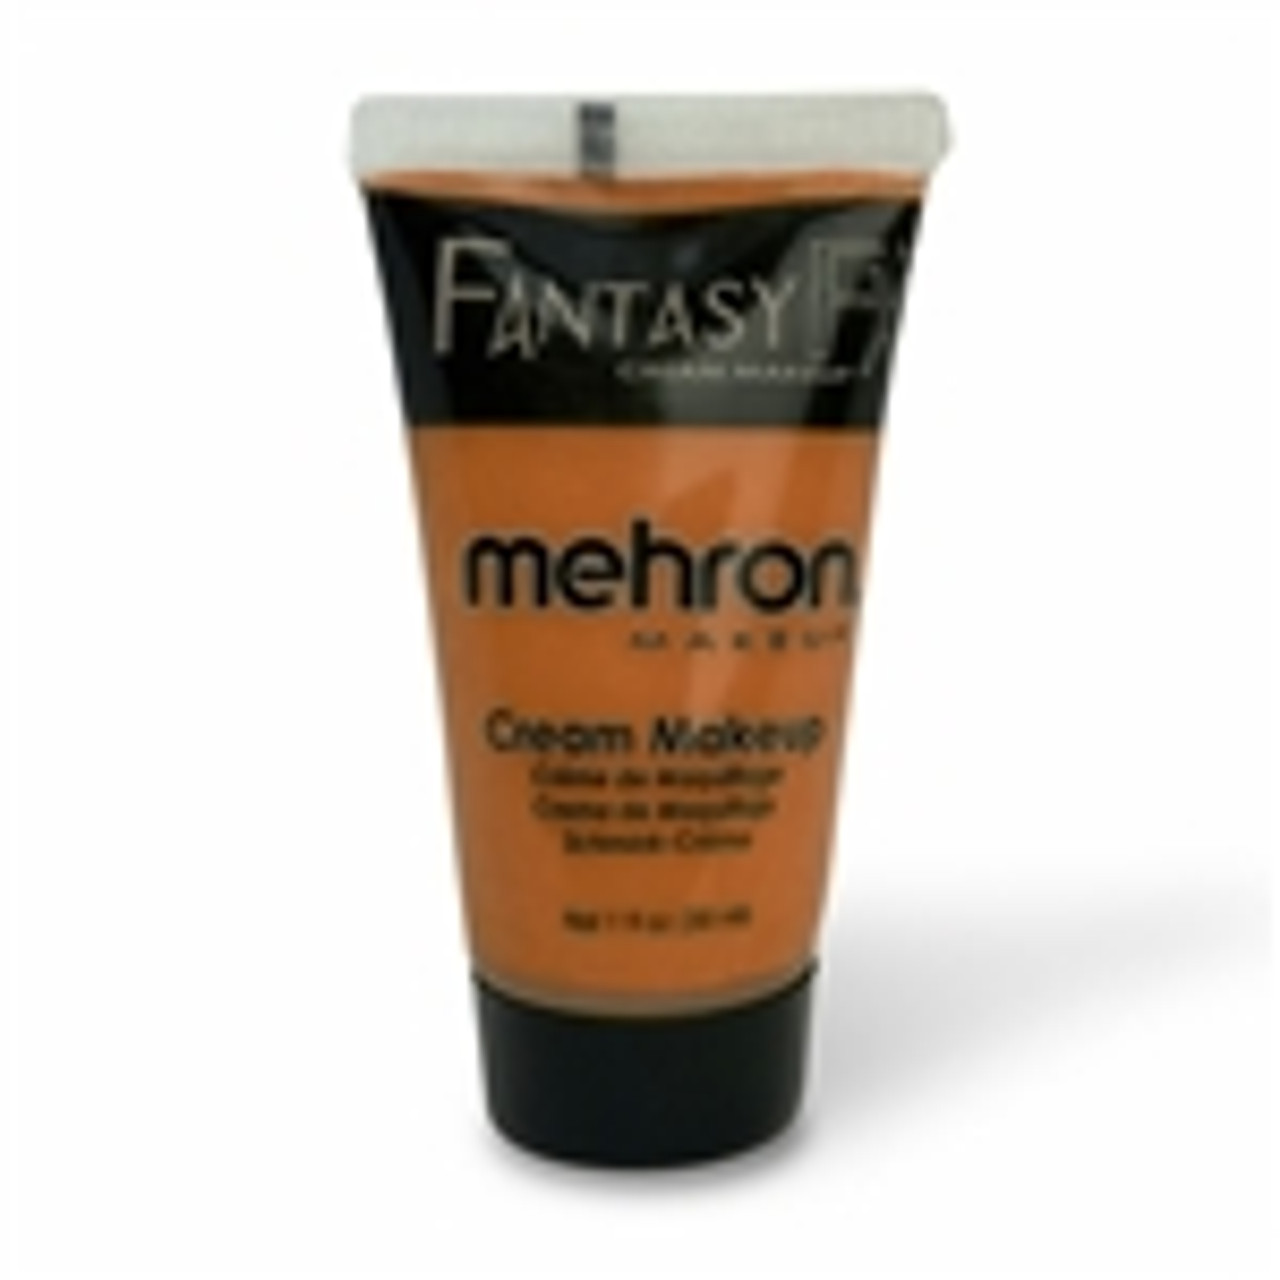 Fantasy FX Orange 1floz tube by Mehron